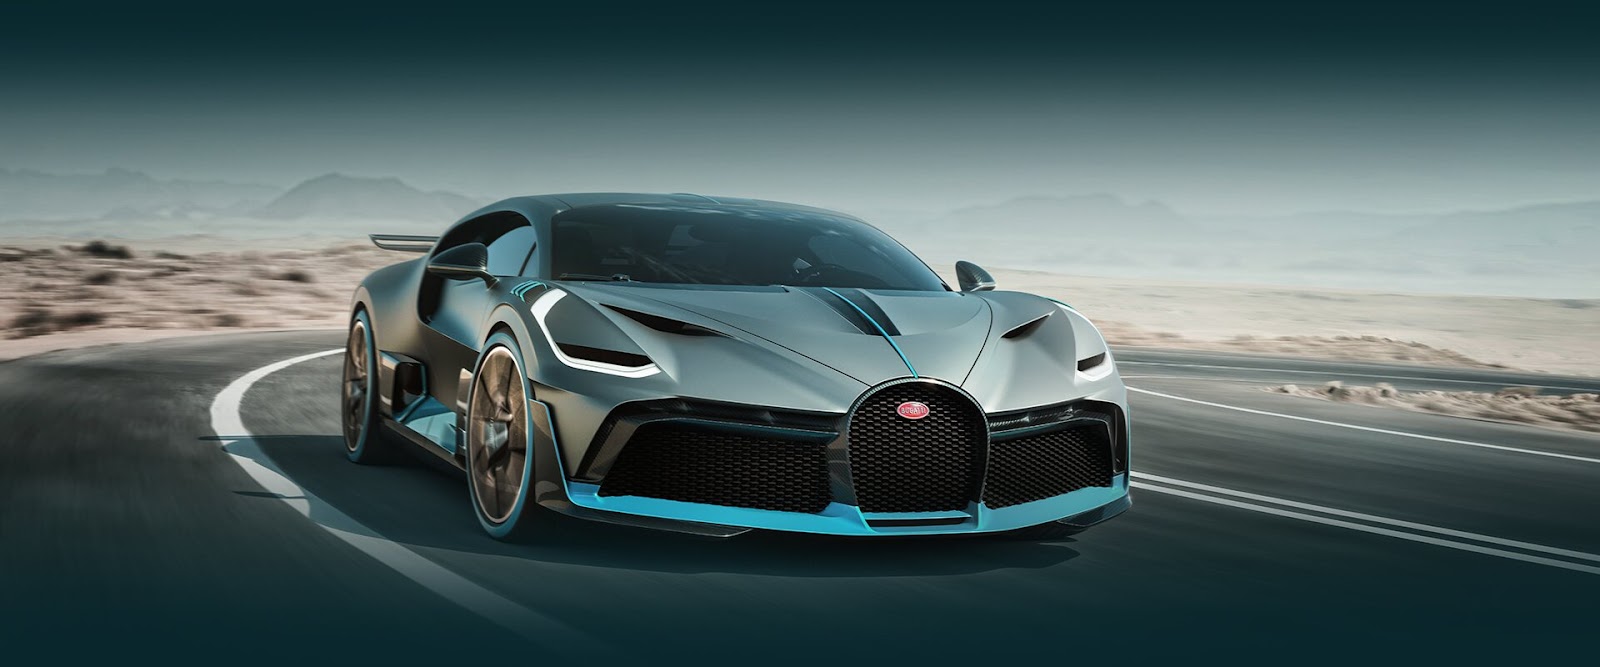 Bugatti Divo price